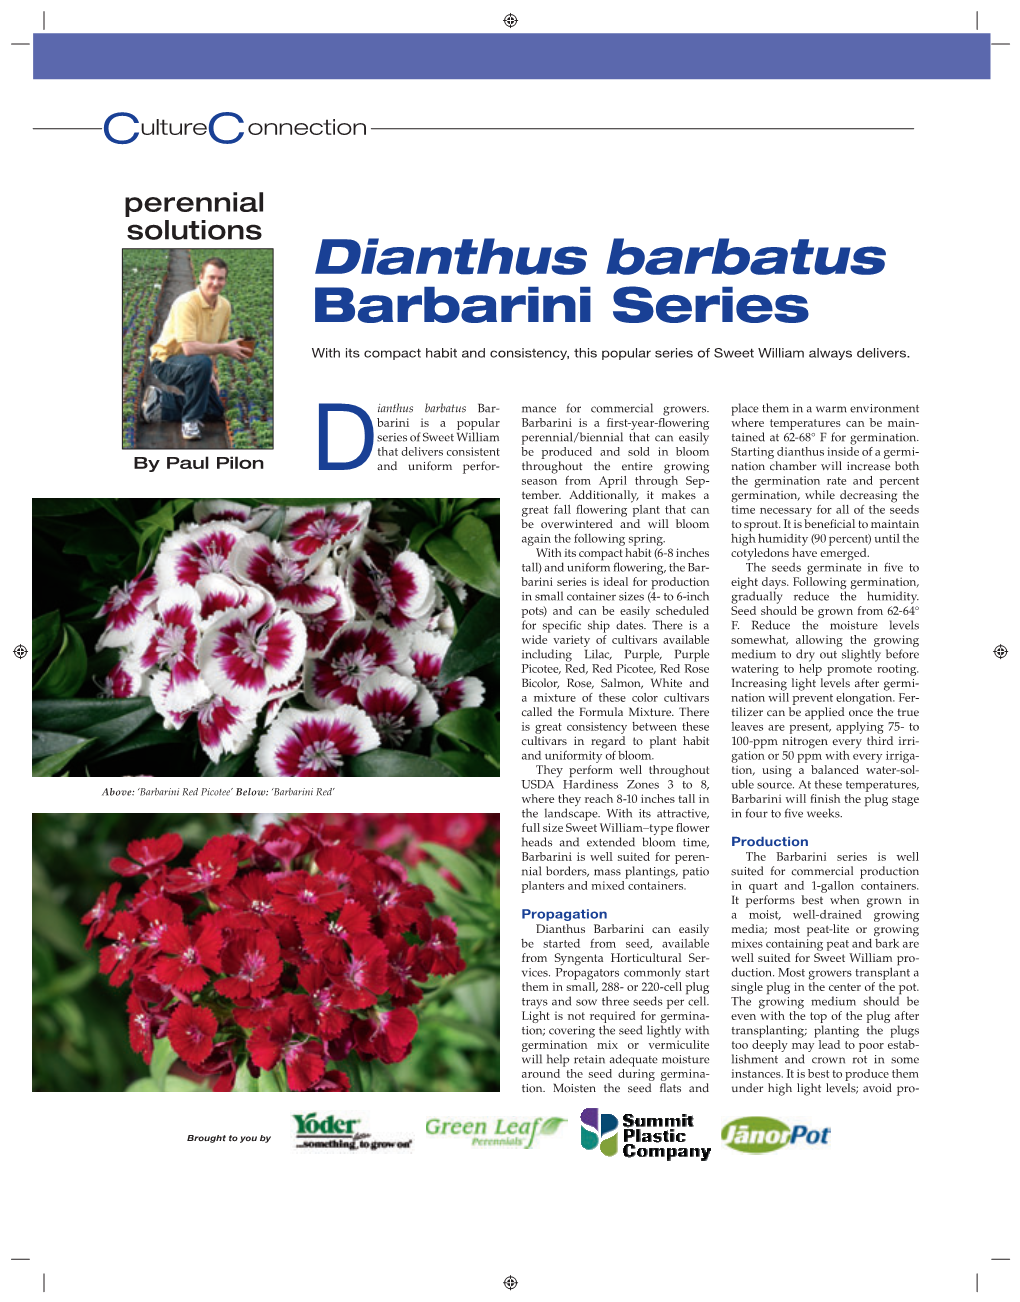 Dianthus Barbatus Barbarini Series